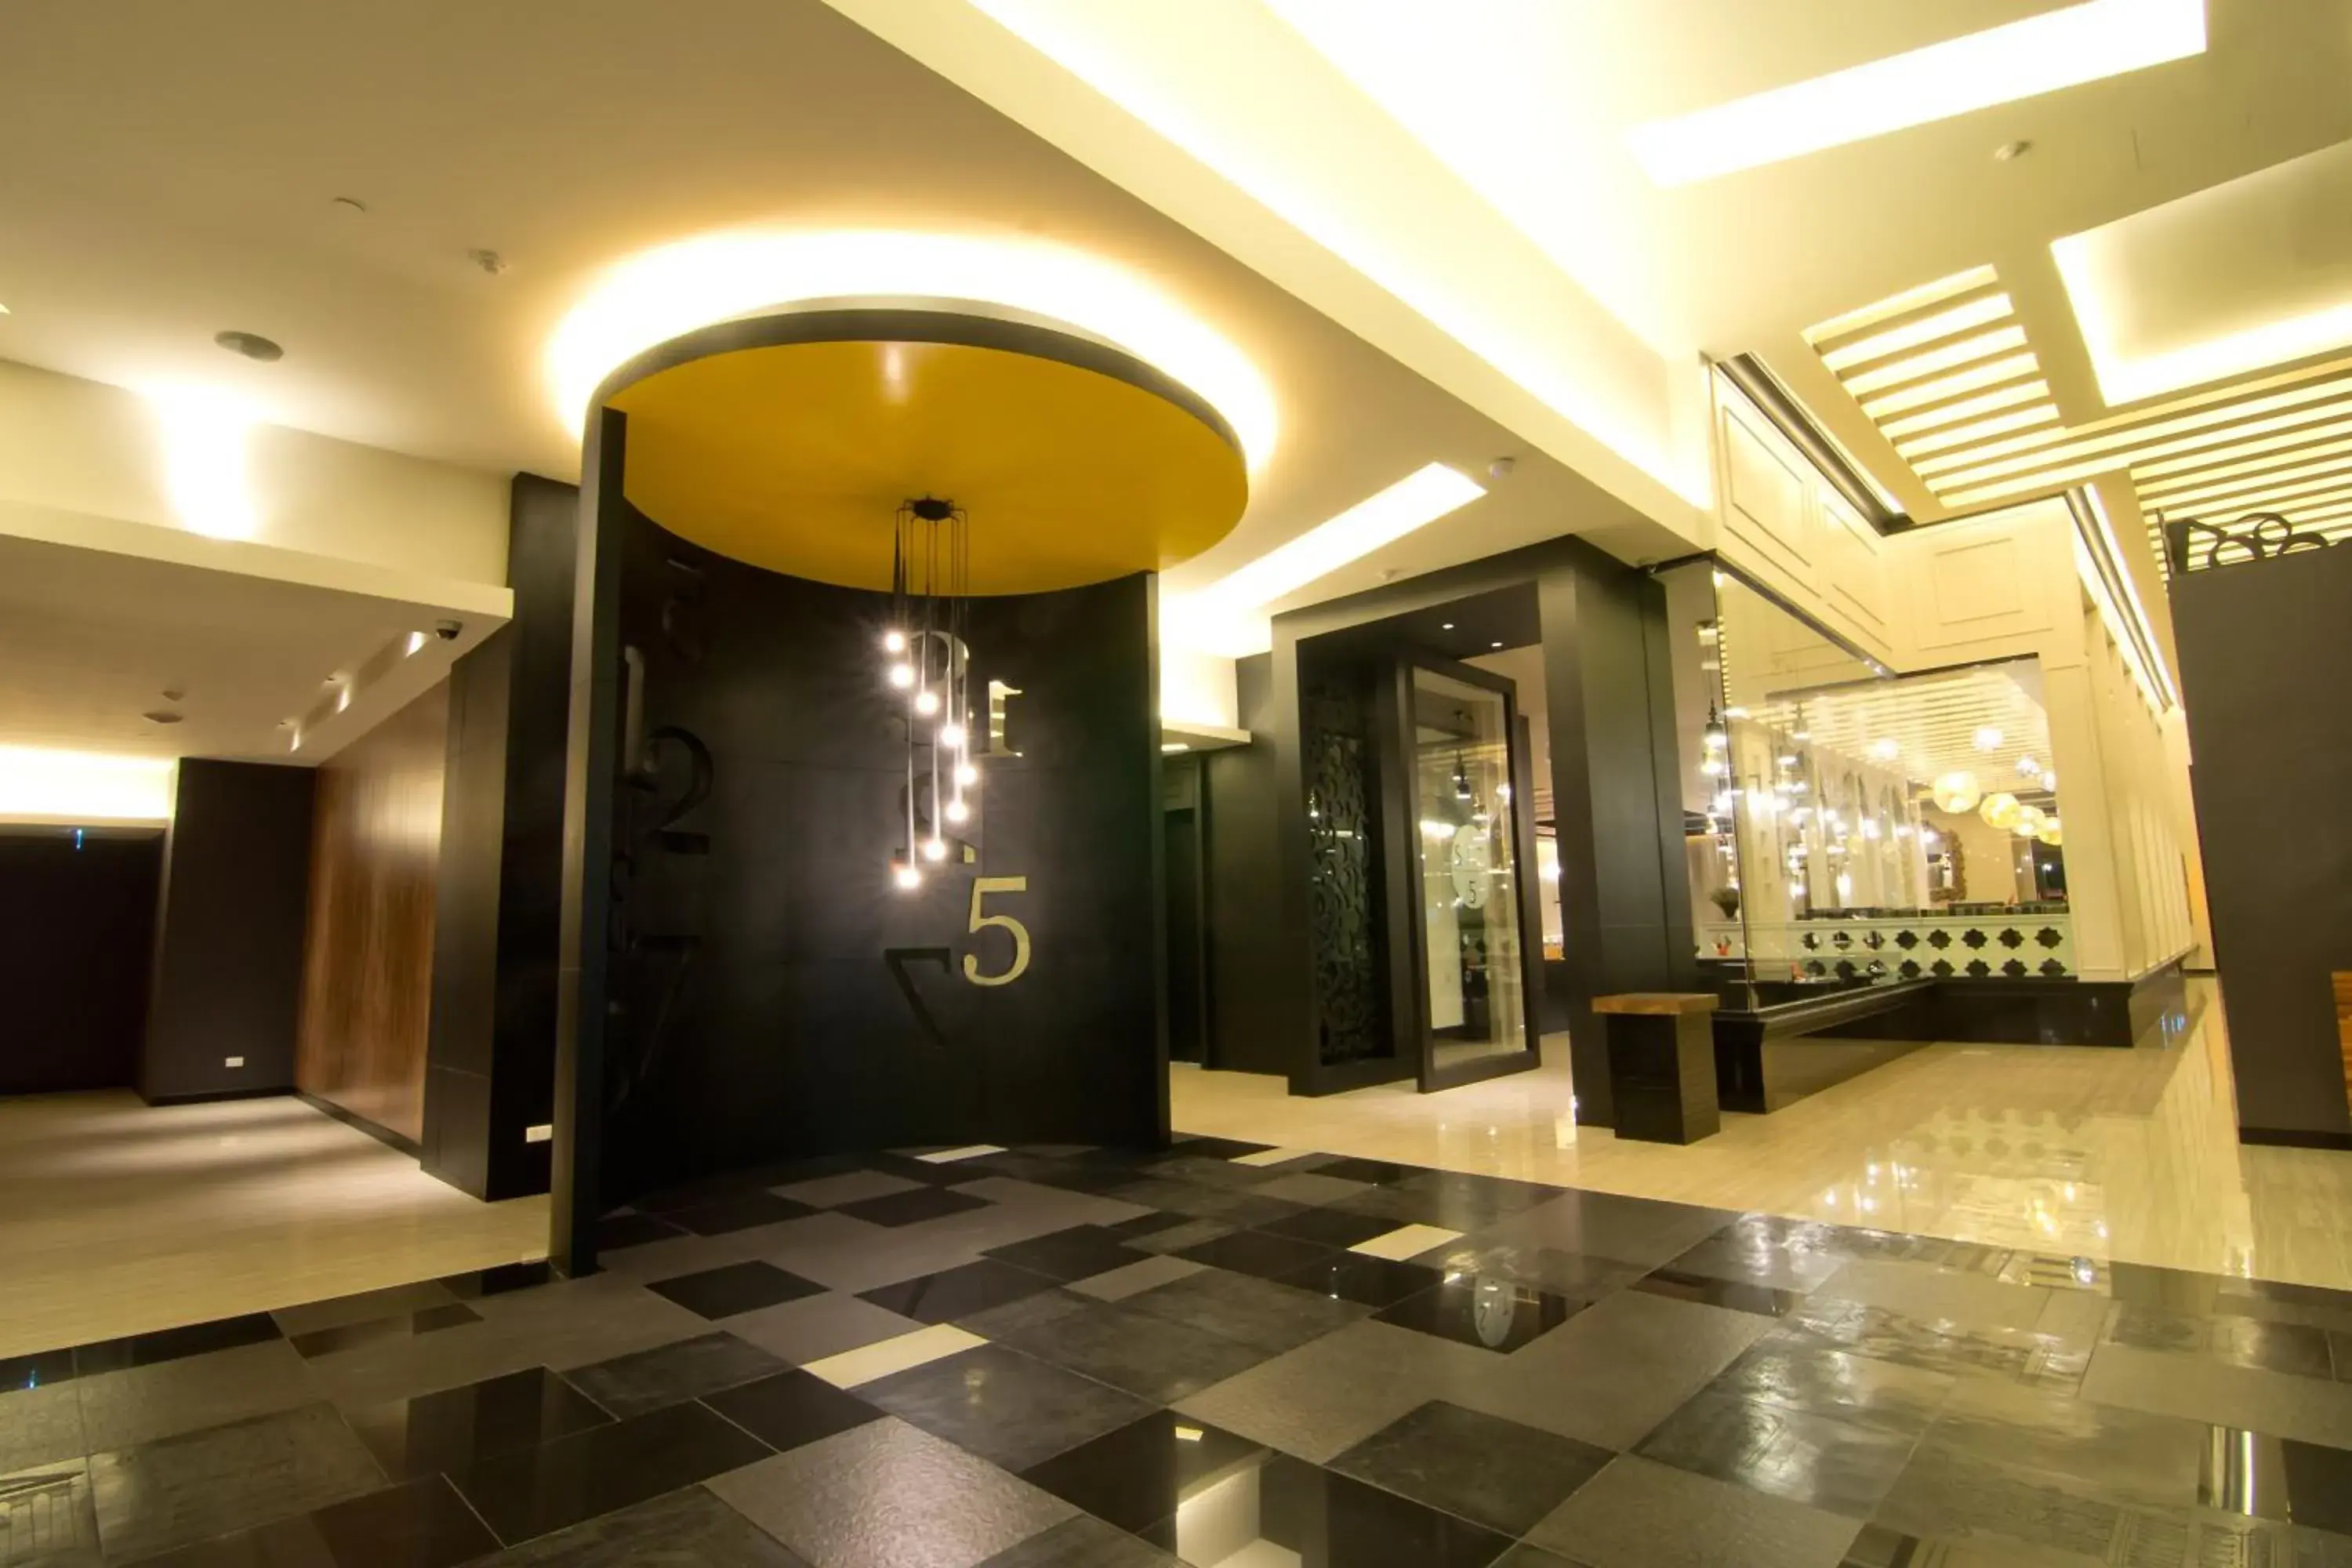 Lobby or reception, Lobby/Reception in Tsix5 Hotel